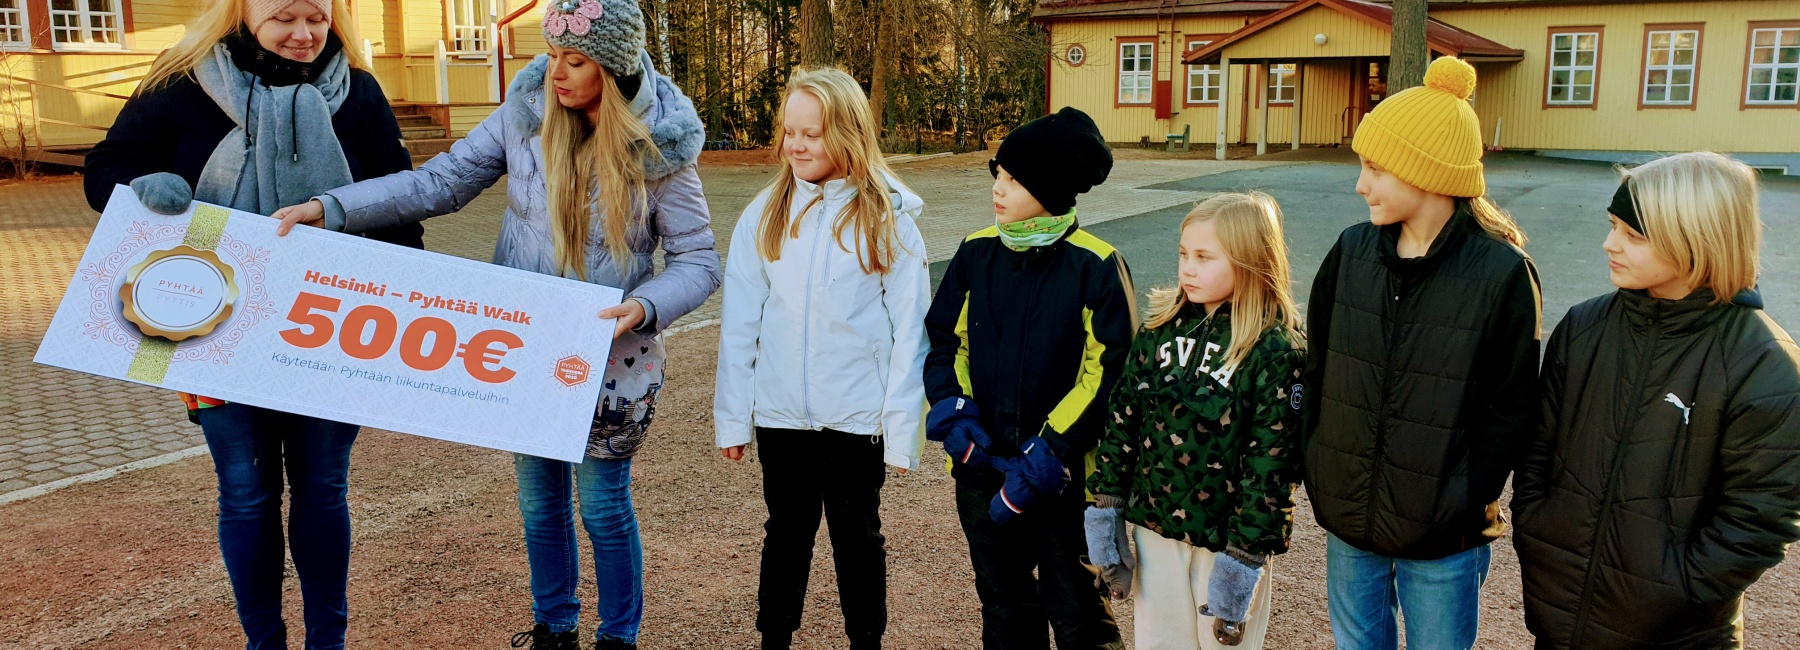 Luokanopettaja Silja Hartikka saa lahjakortin Katja Korelinilta, oppilaskunnan hallitus todistaa